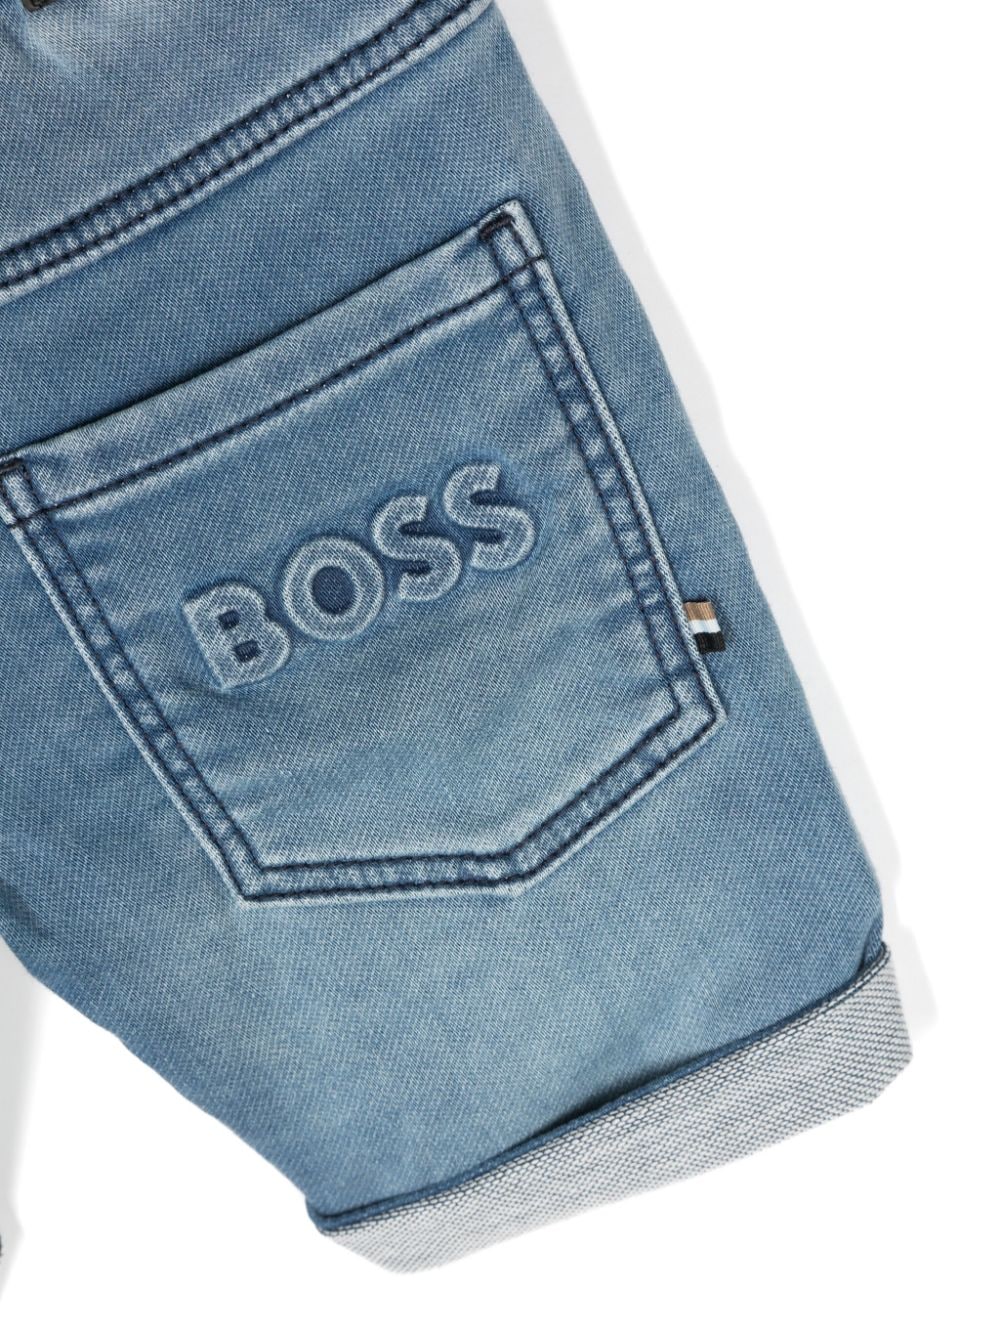 Boss Kids shorts in jeans